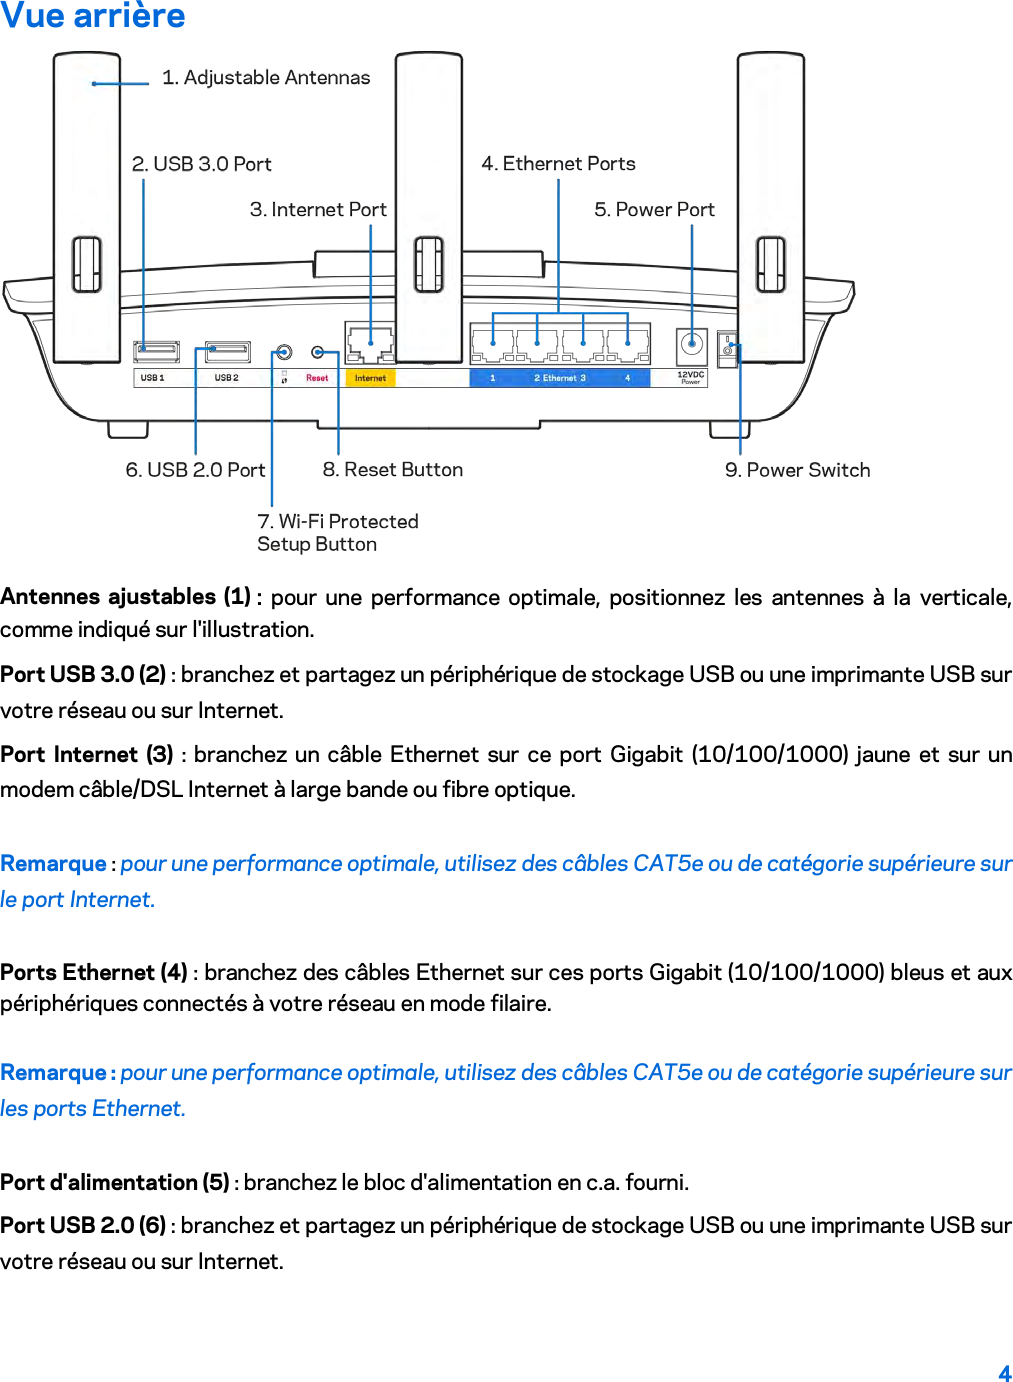 4  Vue arrière  Antennes ajustables (1) : pour une performance optimale, positionnez les antennes à la verticale, comme indiqué sur l&apos;illustration. Port USB 3.0 (2) : branchez et partagez un périphérique de stockage USB ou une imprimante USB sur votre réseau ou sur Internet. Port Internet (3) : branchez un câble Ethernet sur ce port Gigabit (10/100/1000) jaune et sur un modem câble/DSL Internet à large bande ou fibre optique. Remarque : pour une performance optimale, utilisez des câbles CAT5e ou de catégorie supérieure sur le port Internet. Ports Ethernet (4) : branchez des câbles Ethernet sur ces ports Gigabit (10/100/1000) bleus et aux périphériques connectés à votre réseau en mode filaire. Remarque : pour une performance optimale, utilisez des câbles CAT5e ou de catégorie supérieure sur les ports Ethernet. Port d&apos;alimentation (5) : branchez le bloc d&apos;alimentation en c.a. fourni. Port USB 2.0 (6) : branchez et partagez un périphérique de stockage USB ou une imprimante USB sur votre réseau ou sur Internet. 